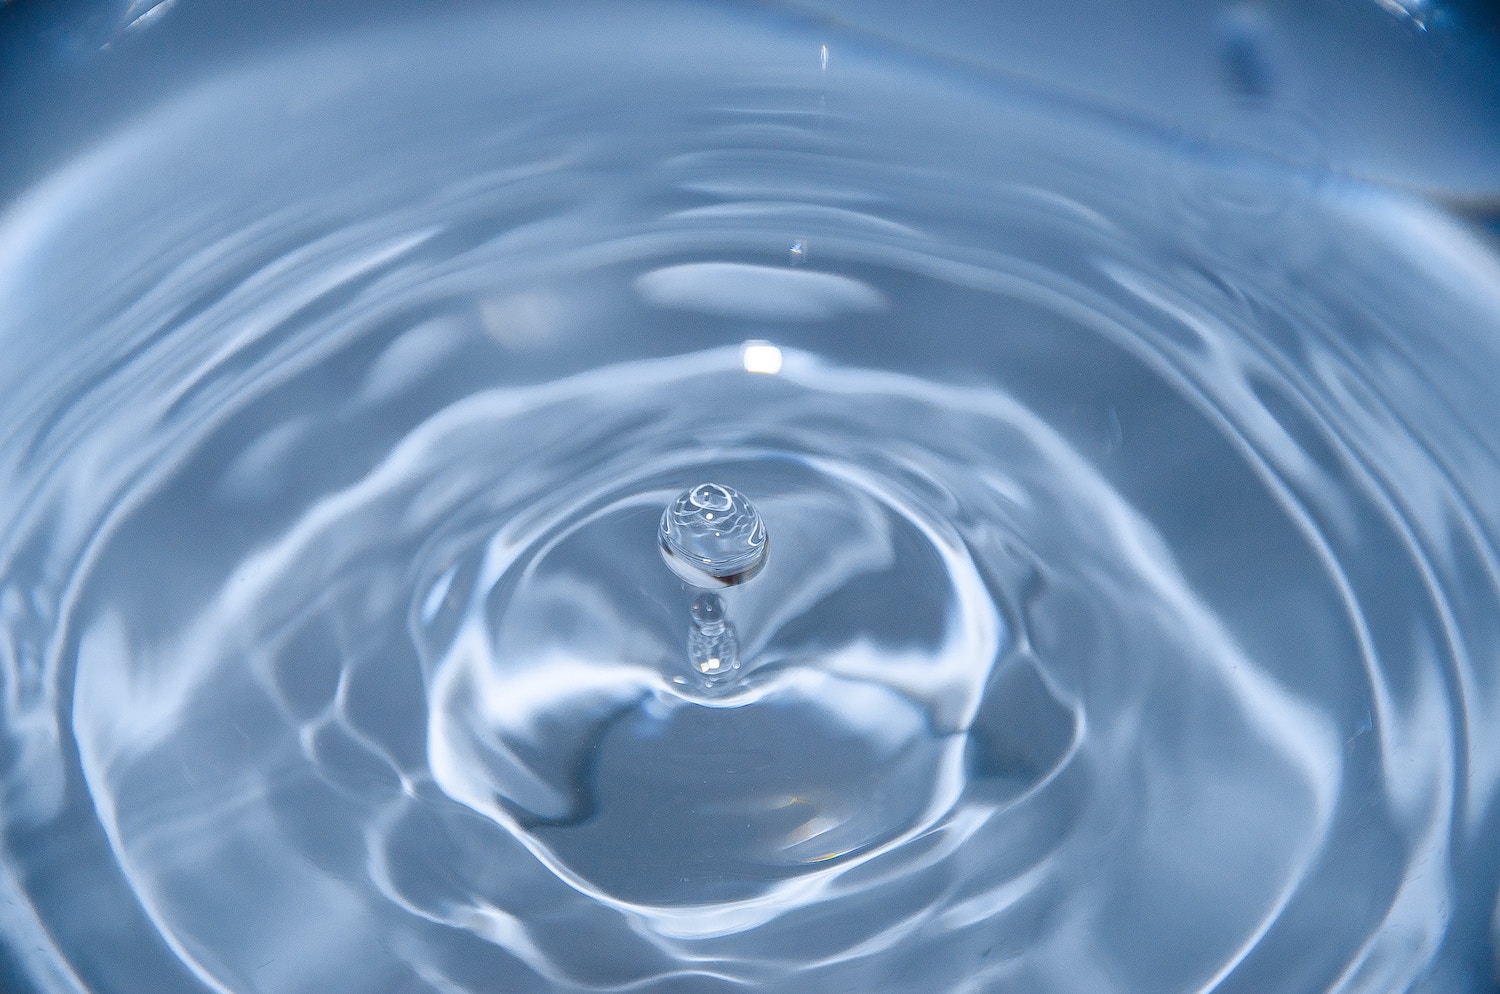 Wonderinterest | Společnost 3M chce čistit vodu, předběžná dohoda přináší oživení akcií